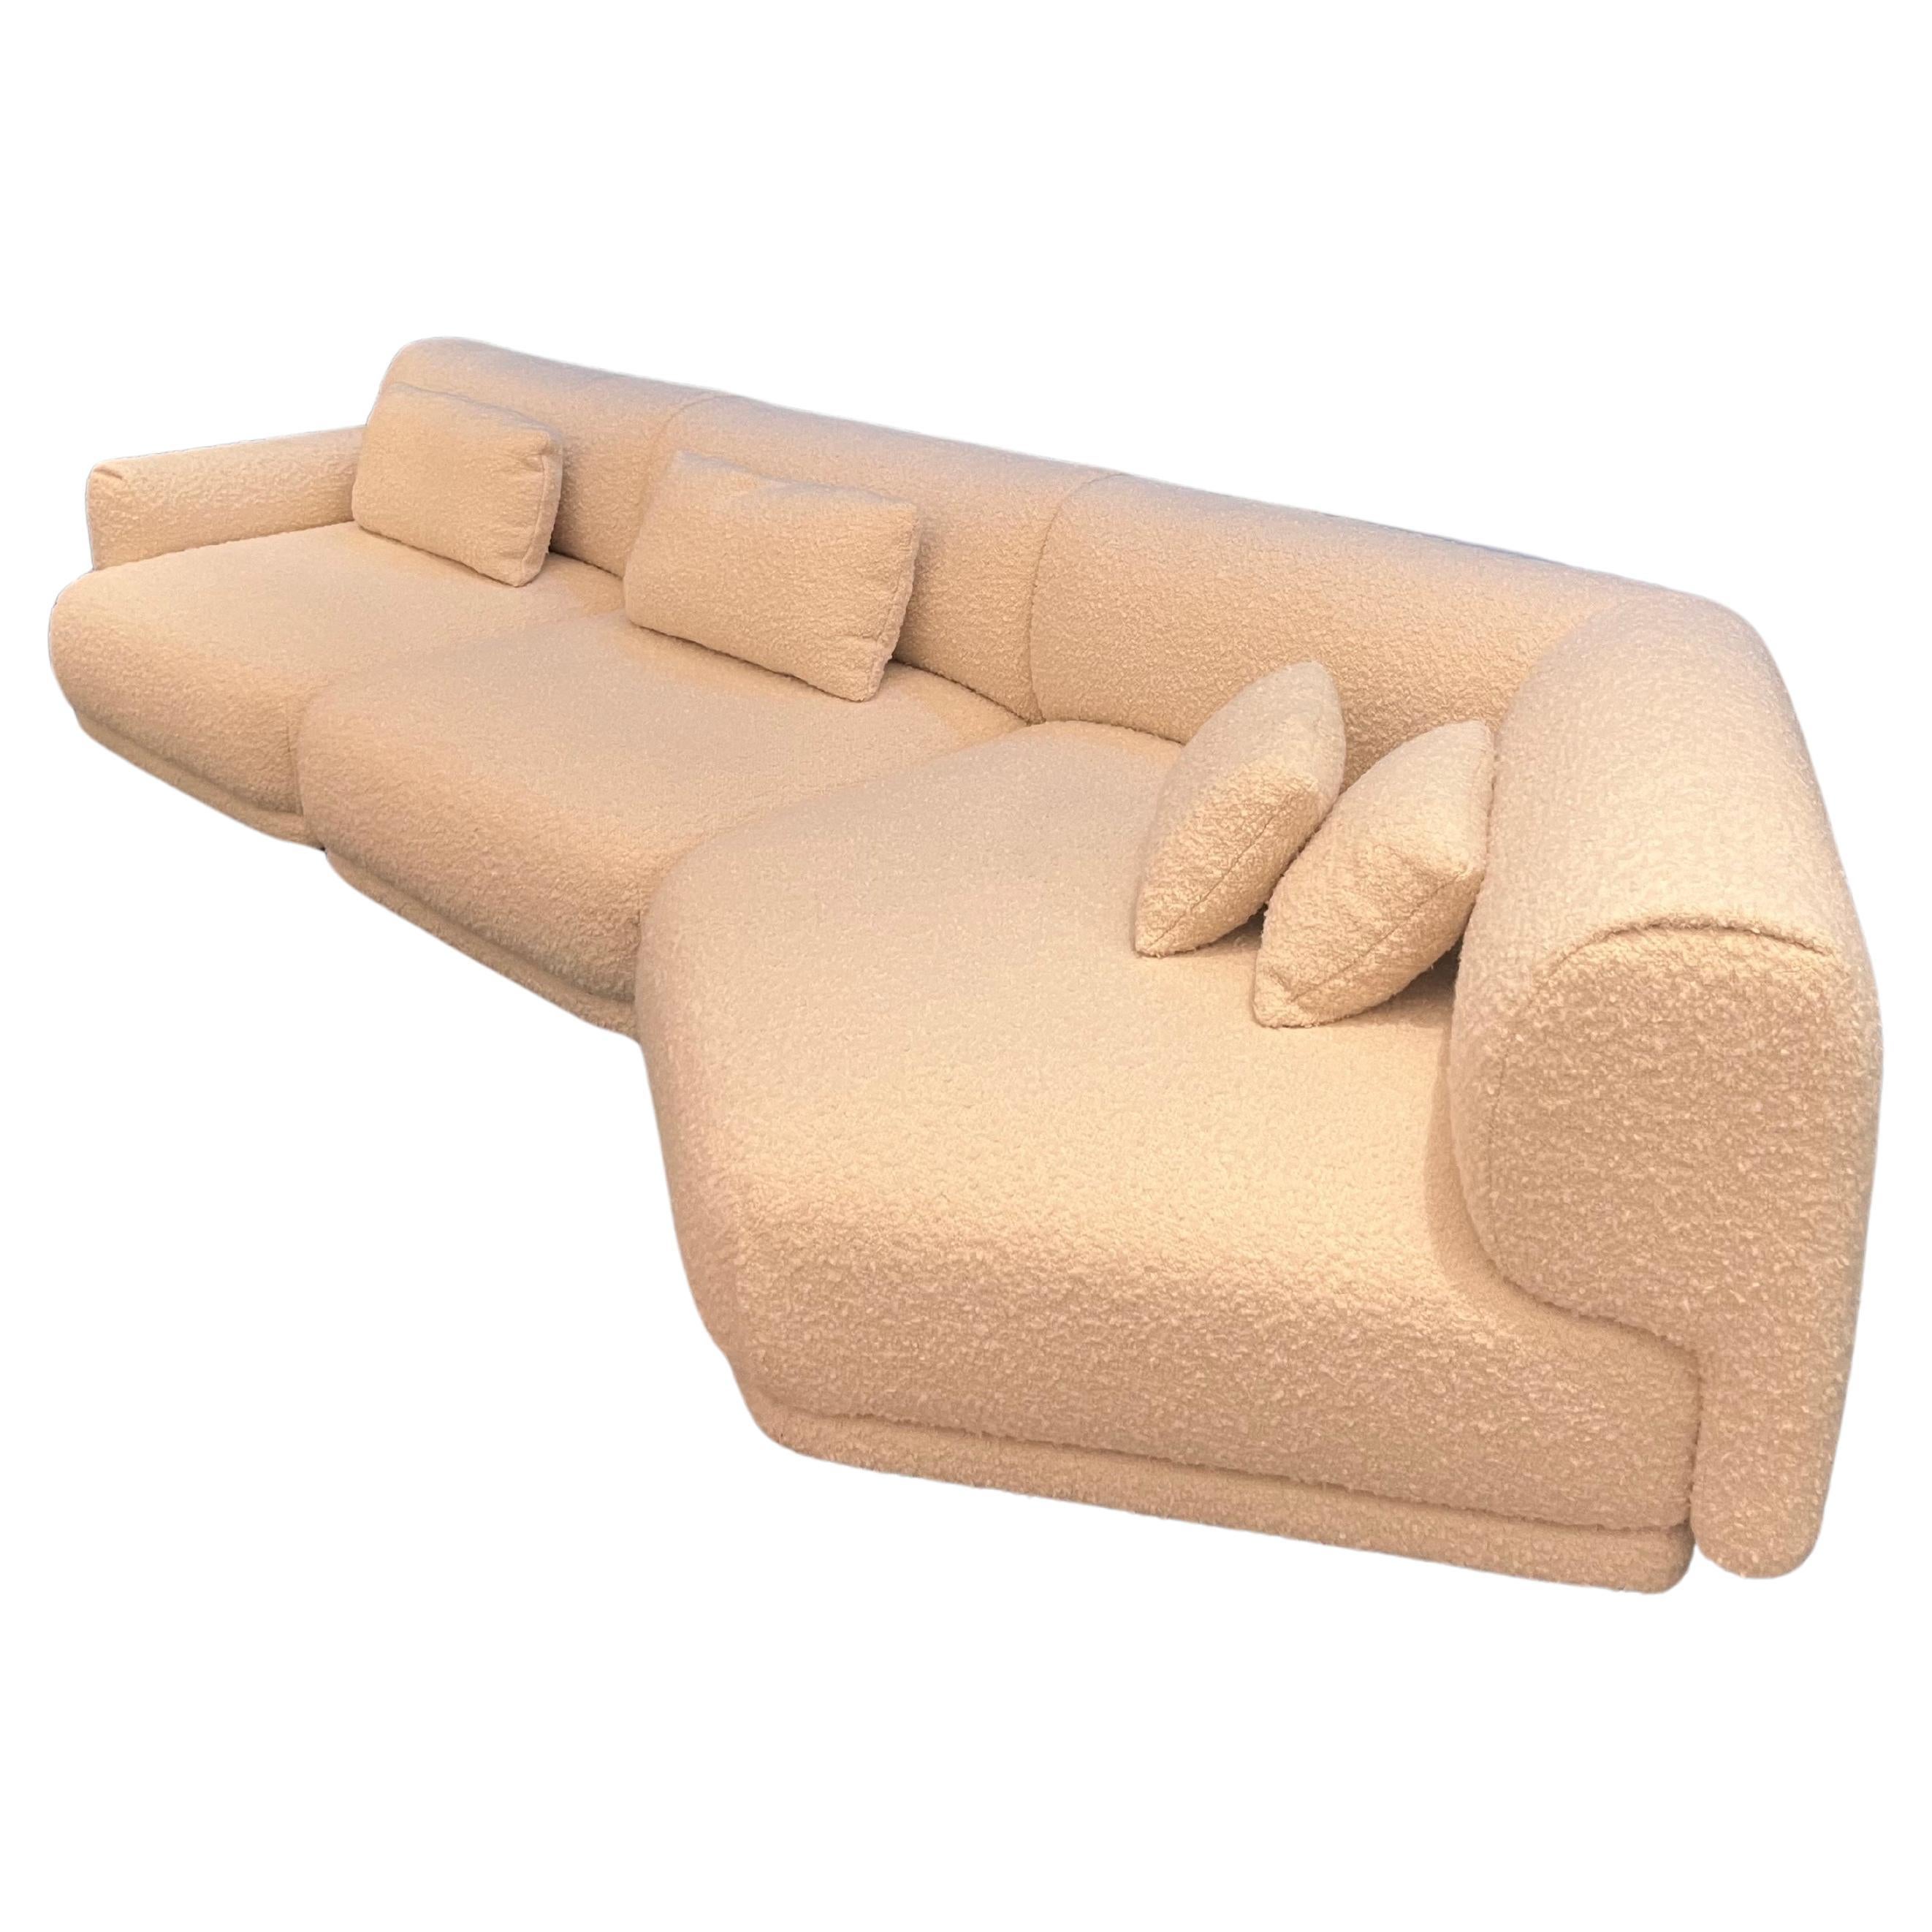 La Manufacture-Paris Moos Sectional Sofa by Sebastian Herkner in Stock